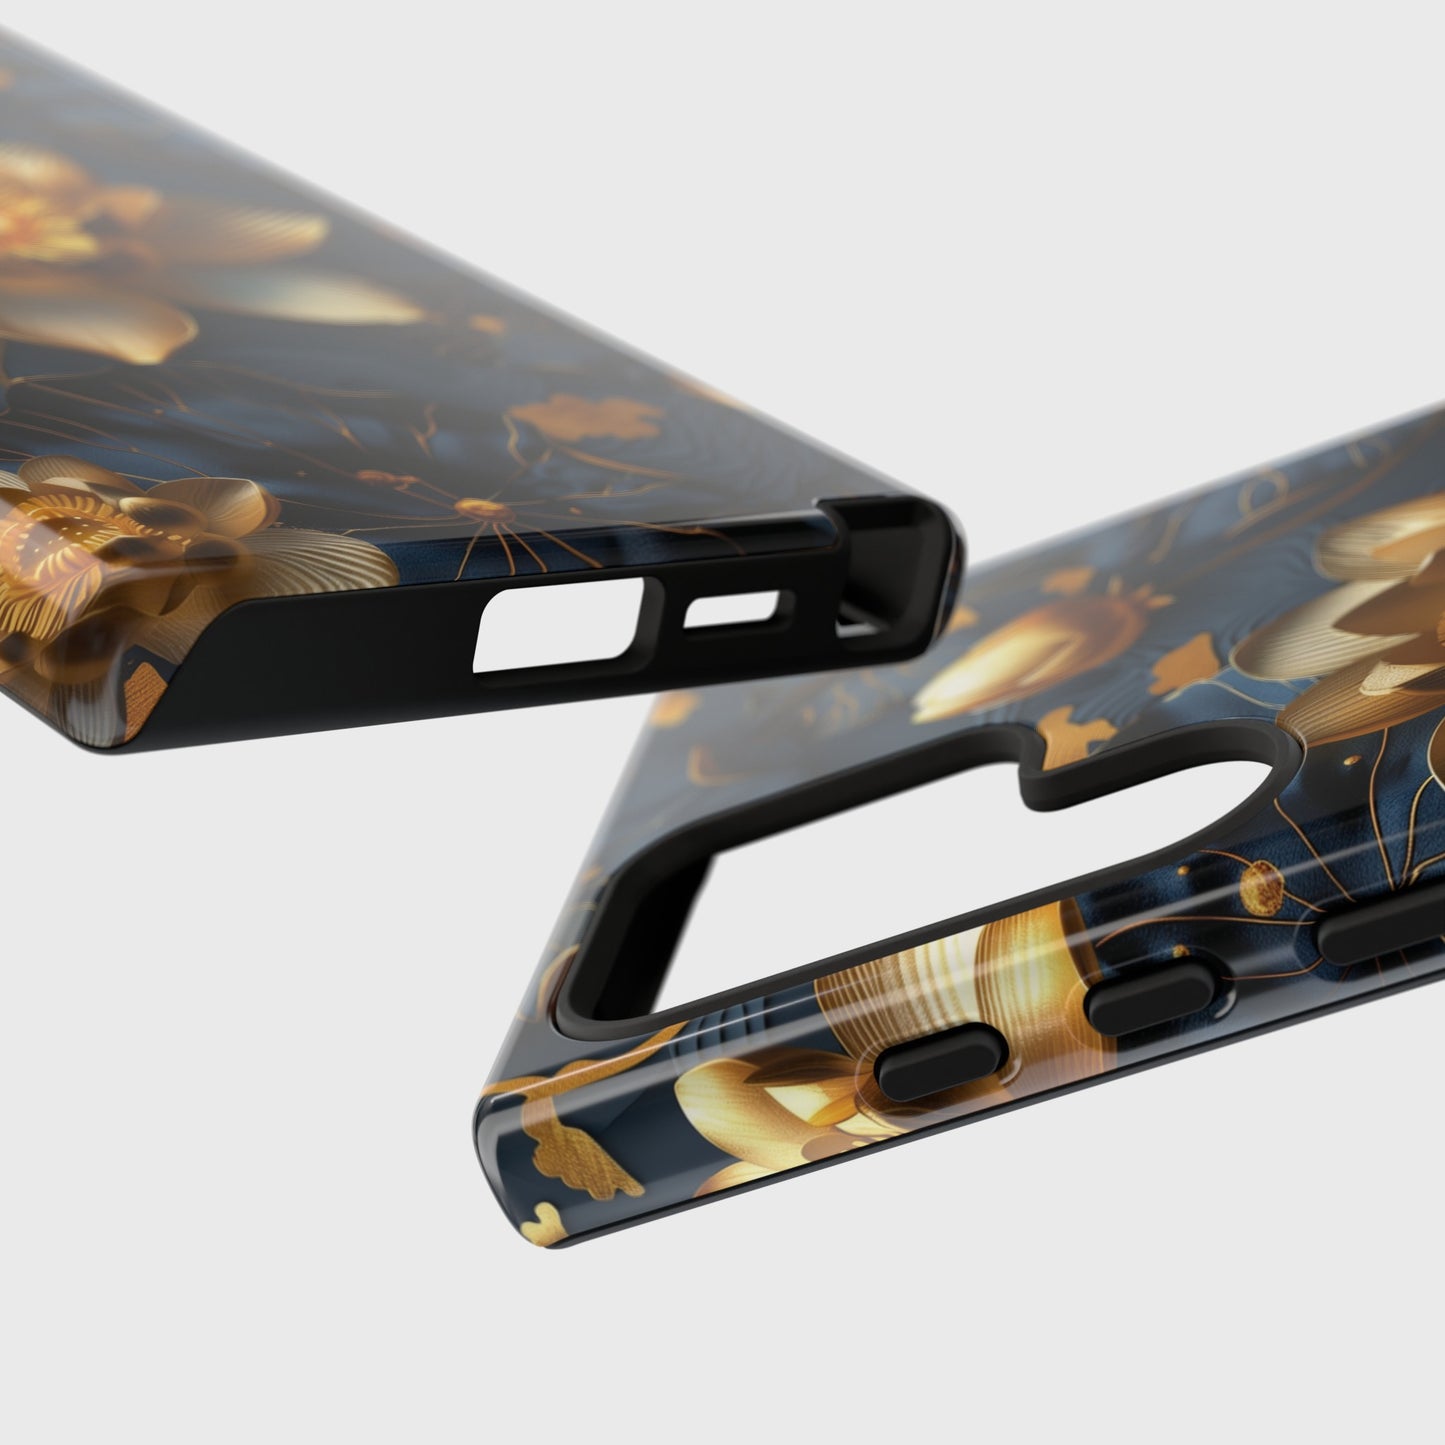 Luxury 3D Lotus Design Samsung Phone Case